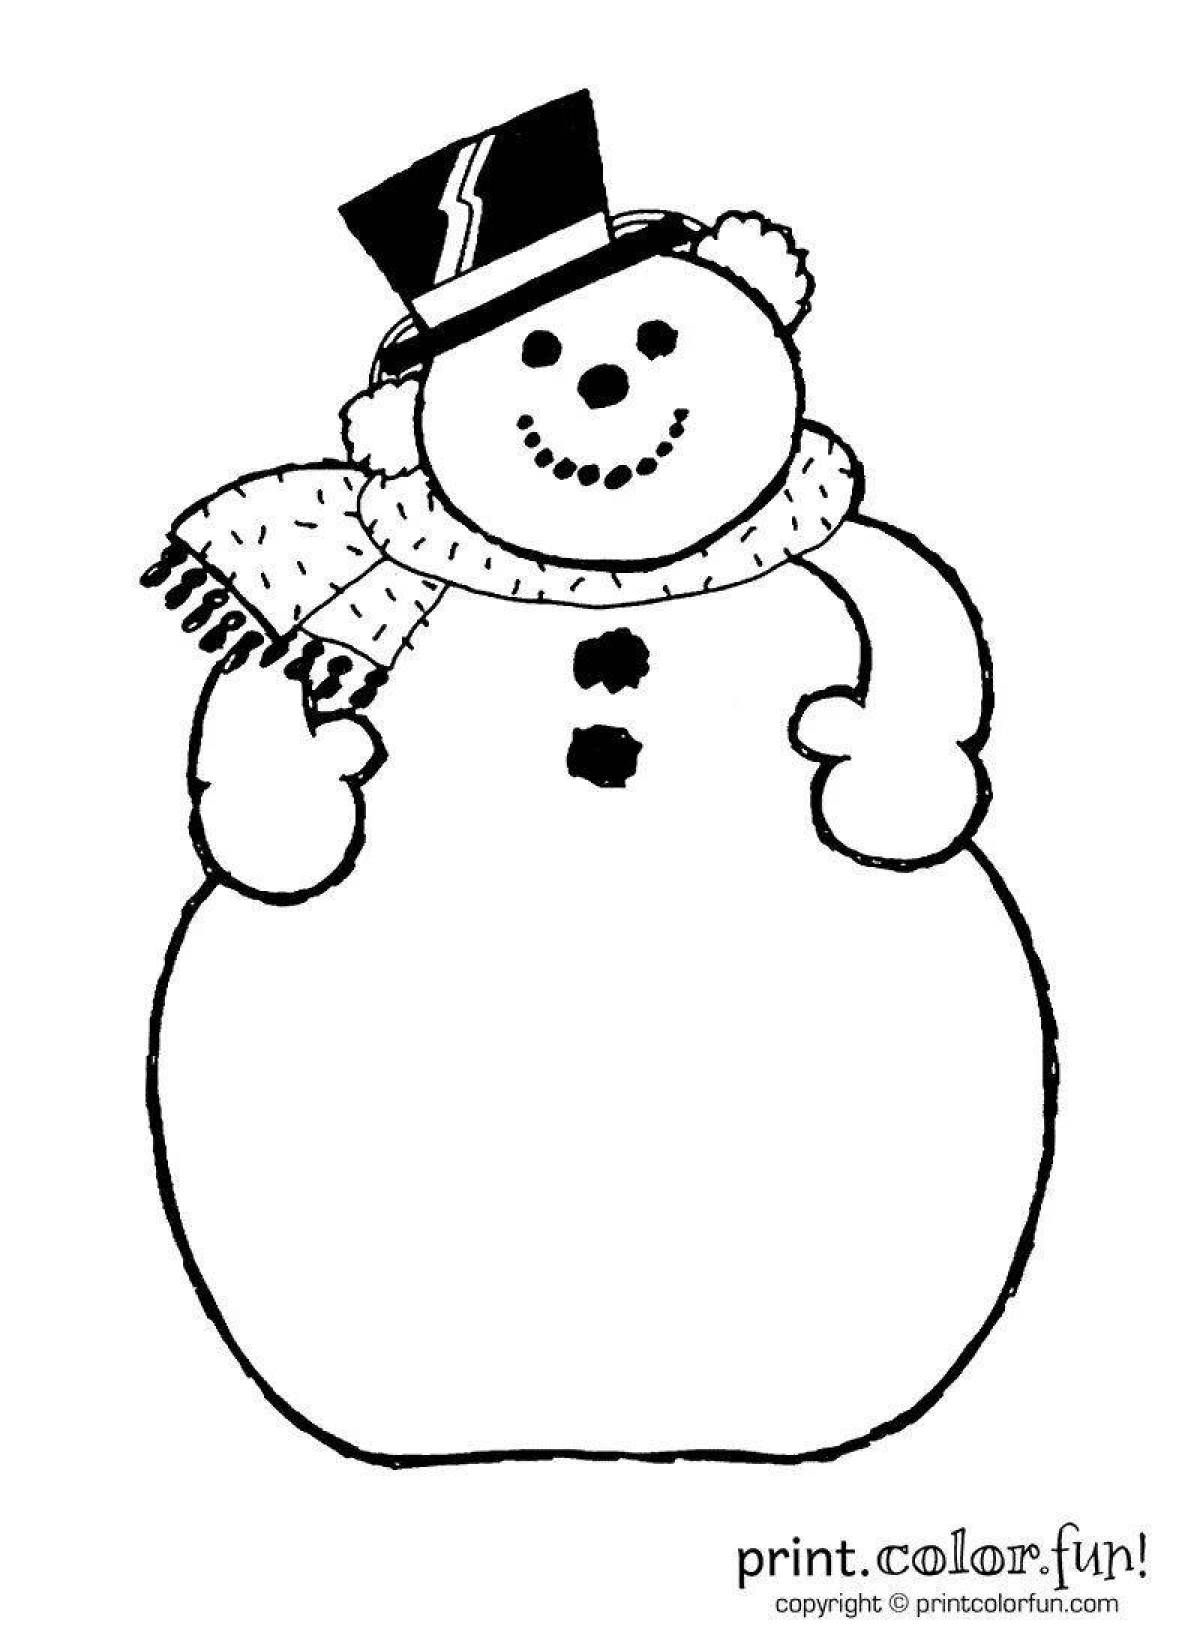 Забавная раскраска снеговик без носа